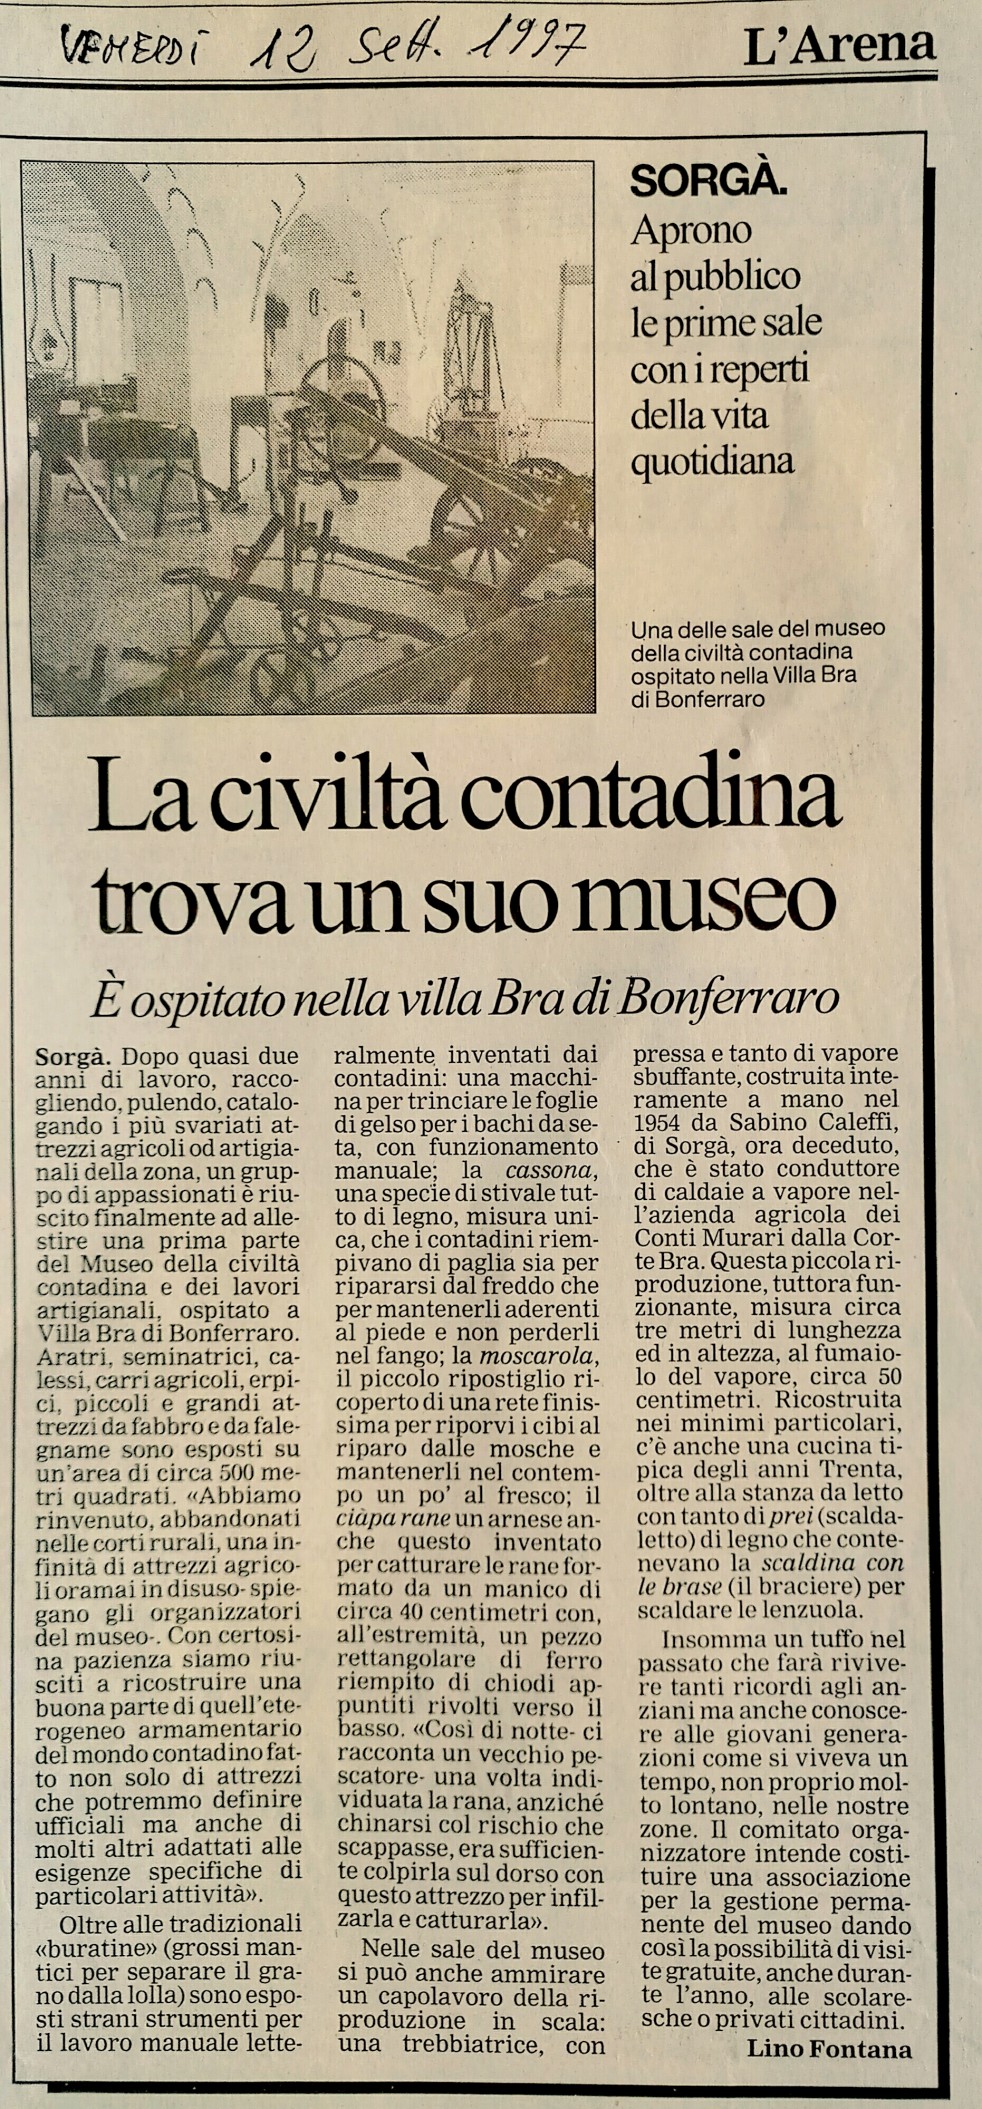 Settembre 1997 Su L'Arena articolo di Lino Fontana